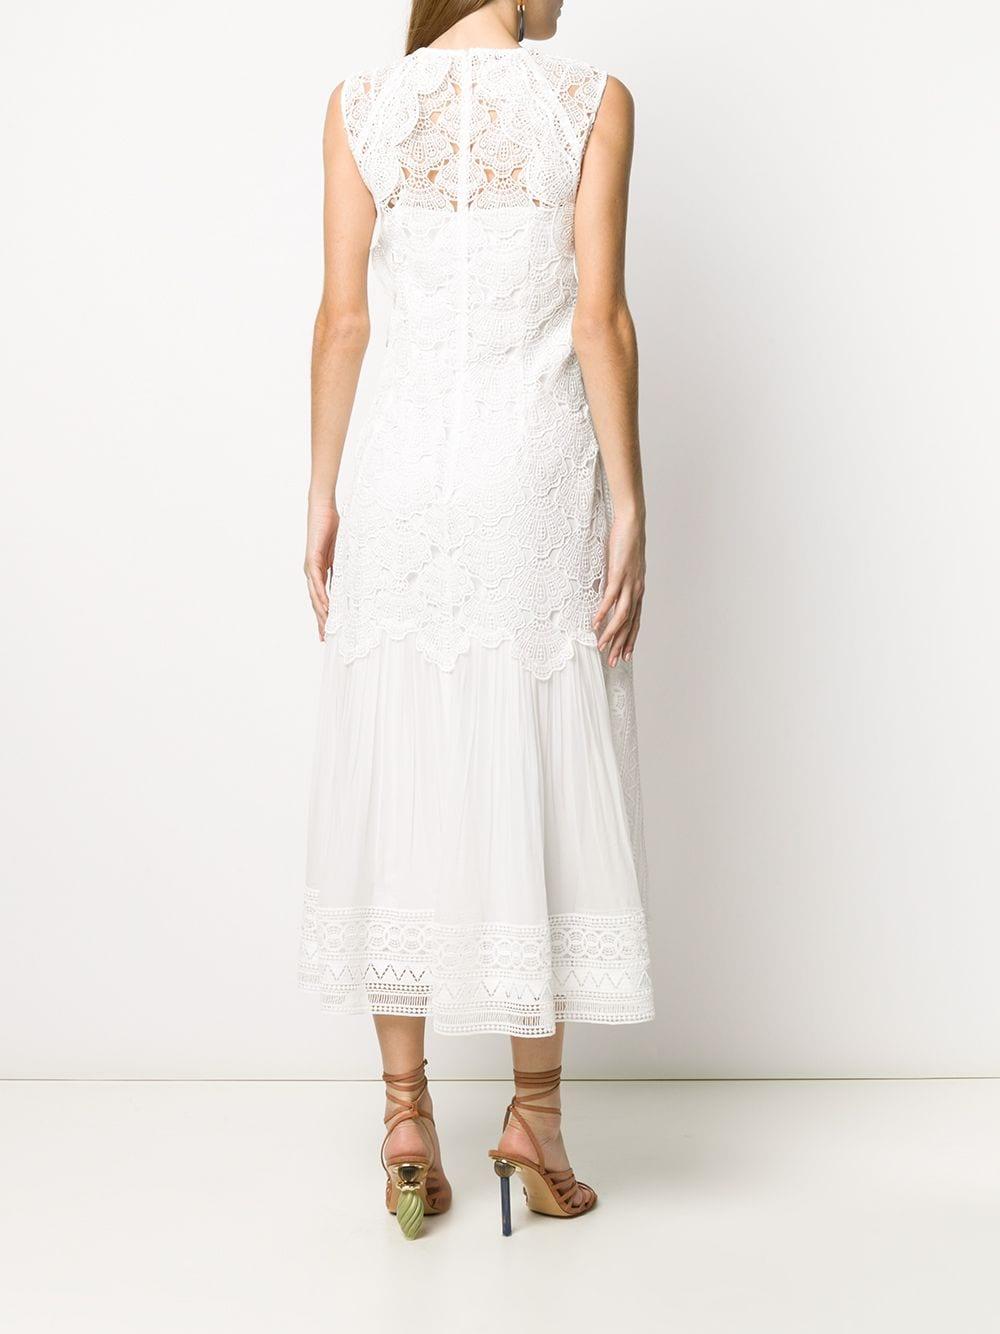 Alberta Ferretti Silk Embroidered Dress in White - Lyst